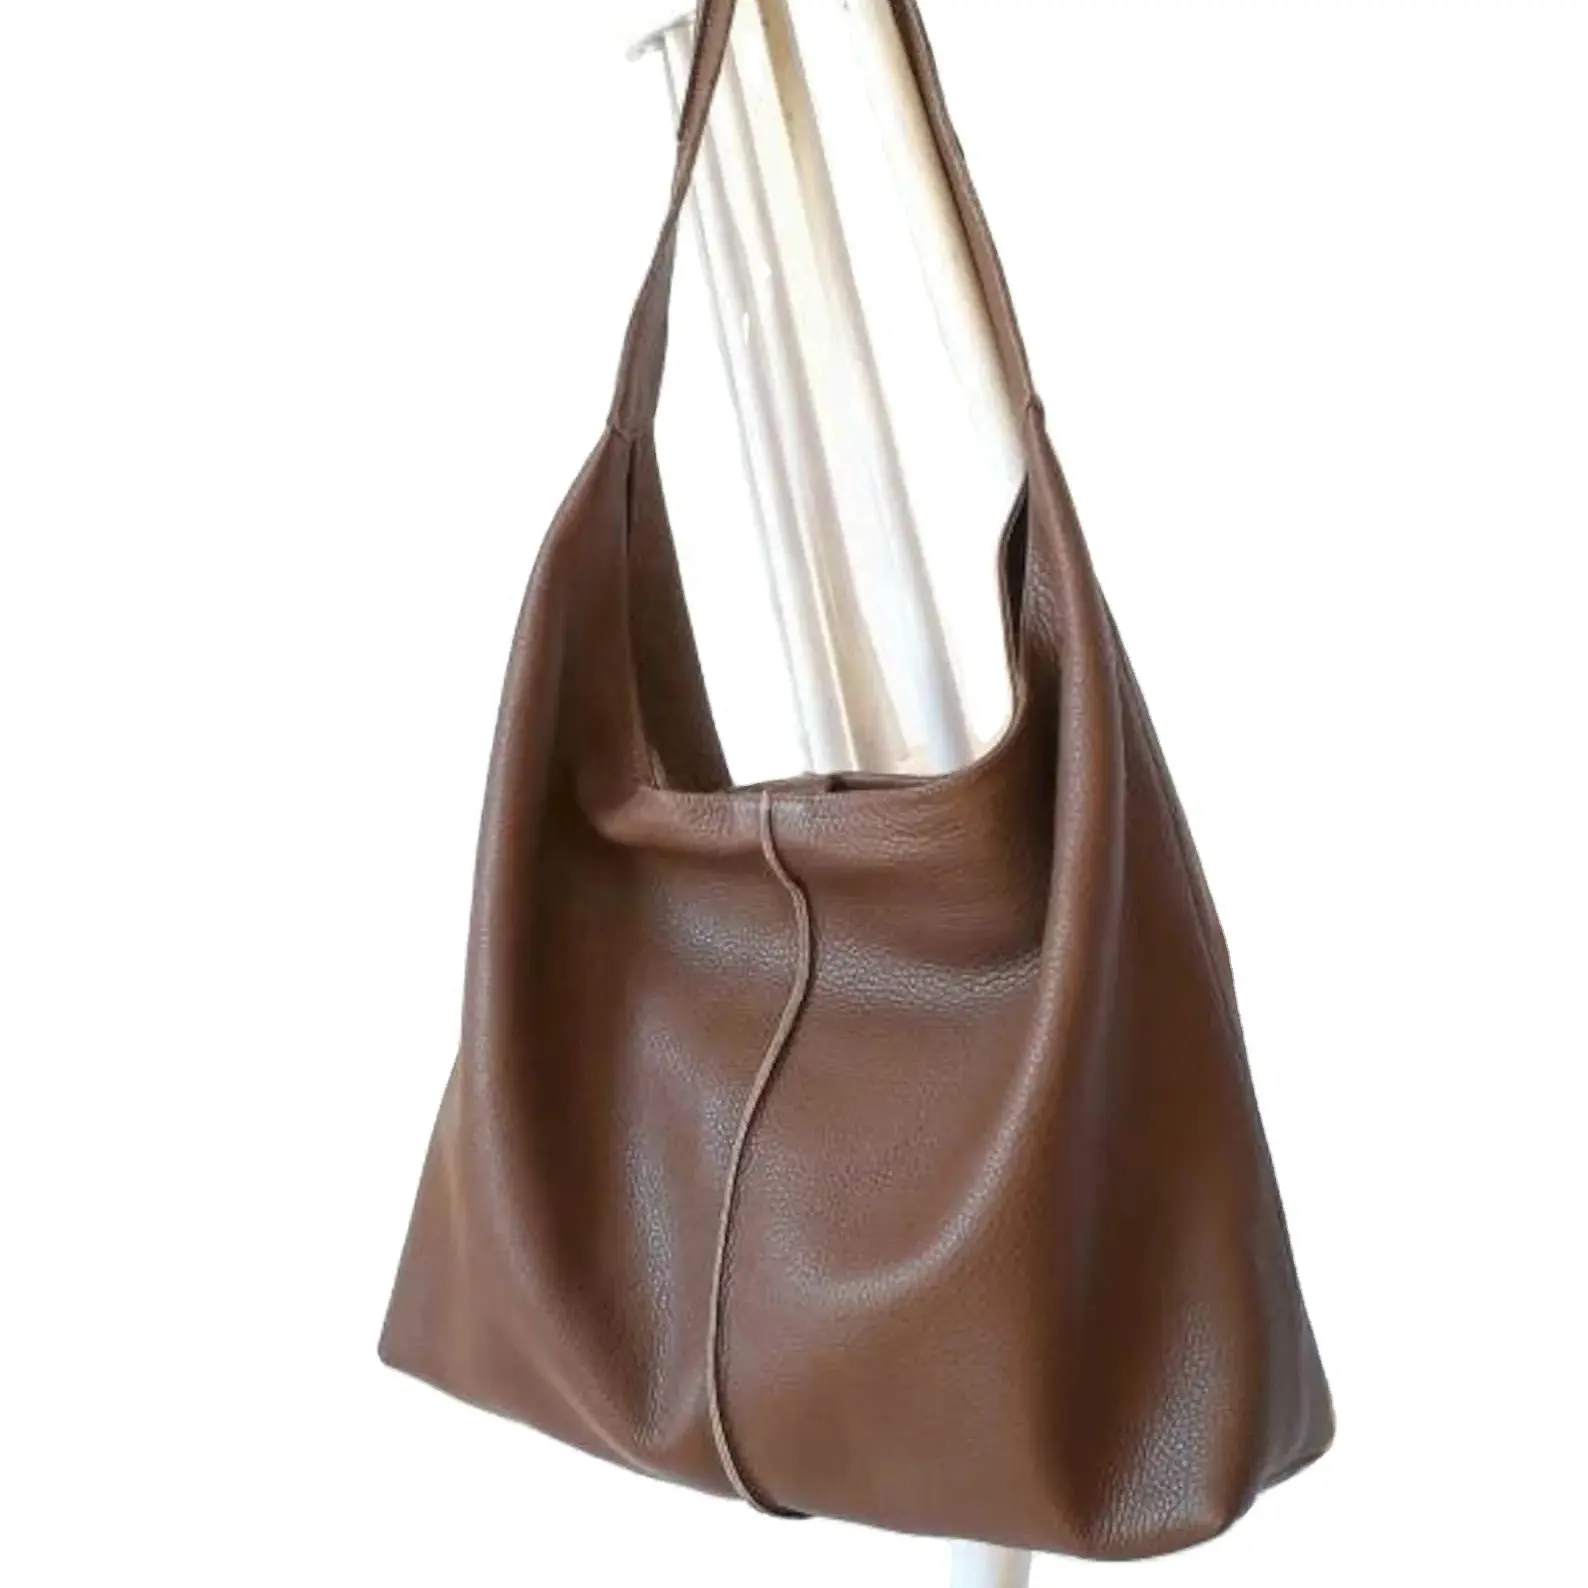 Tas wanita kulit, tas Tote kulit coklat, tas selempang hitam lembut bergaris tangan, dompet LHB-0066